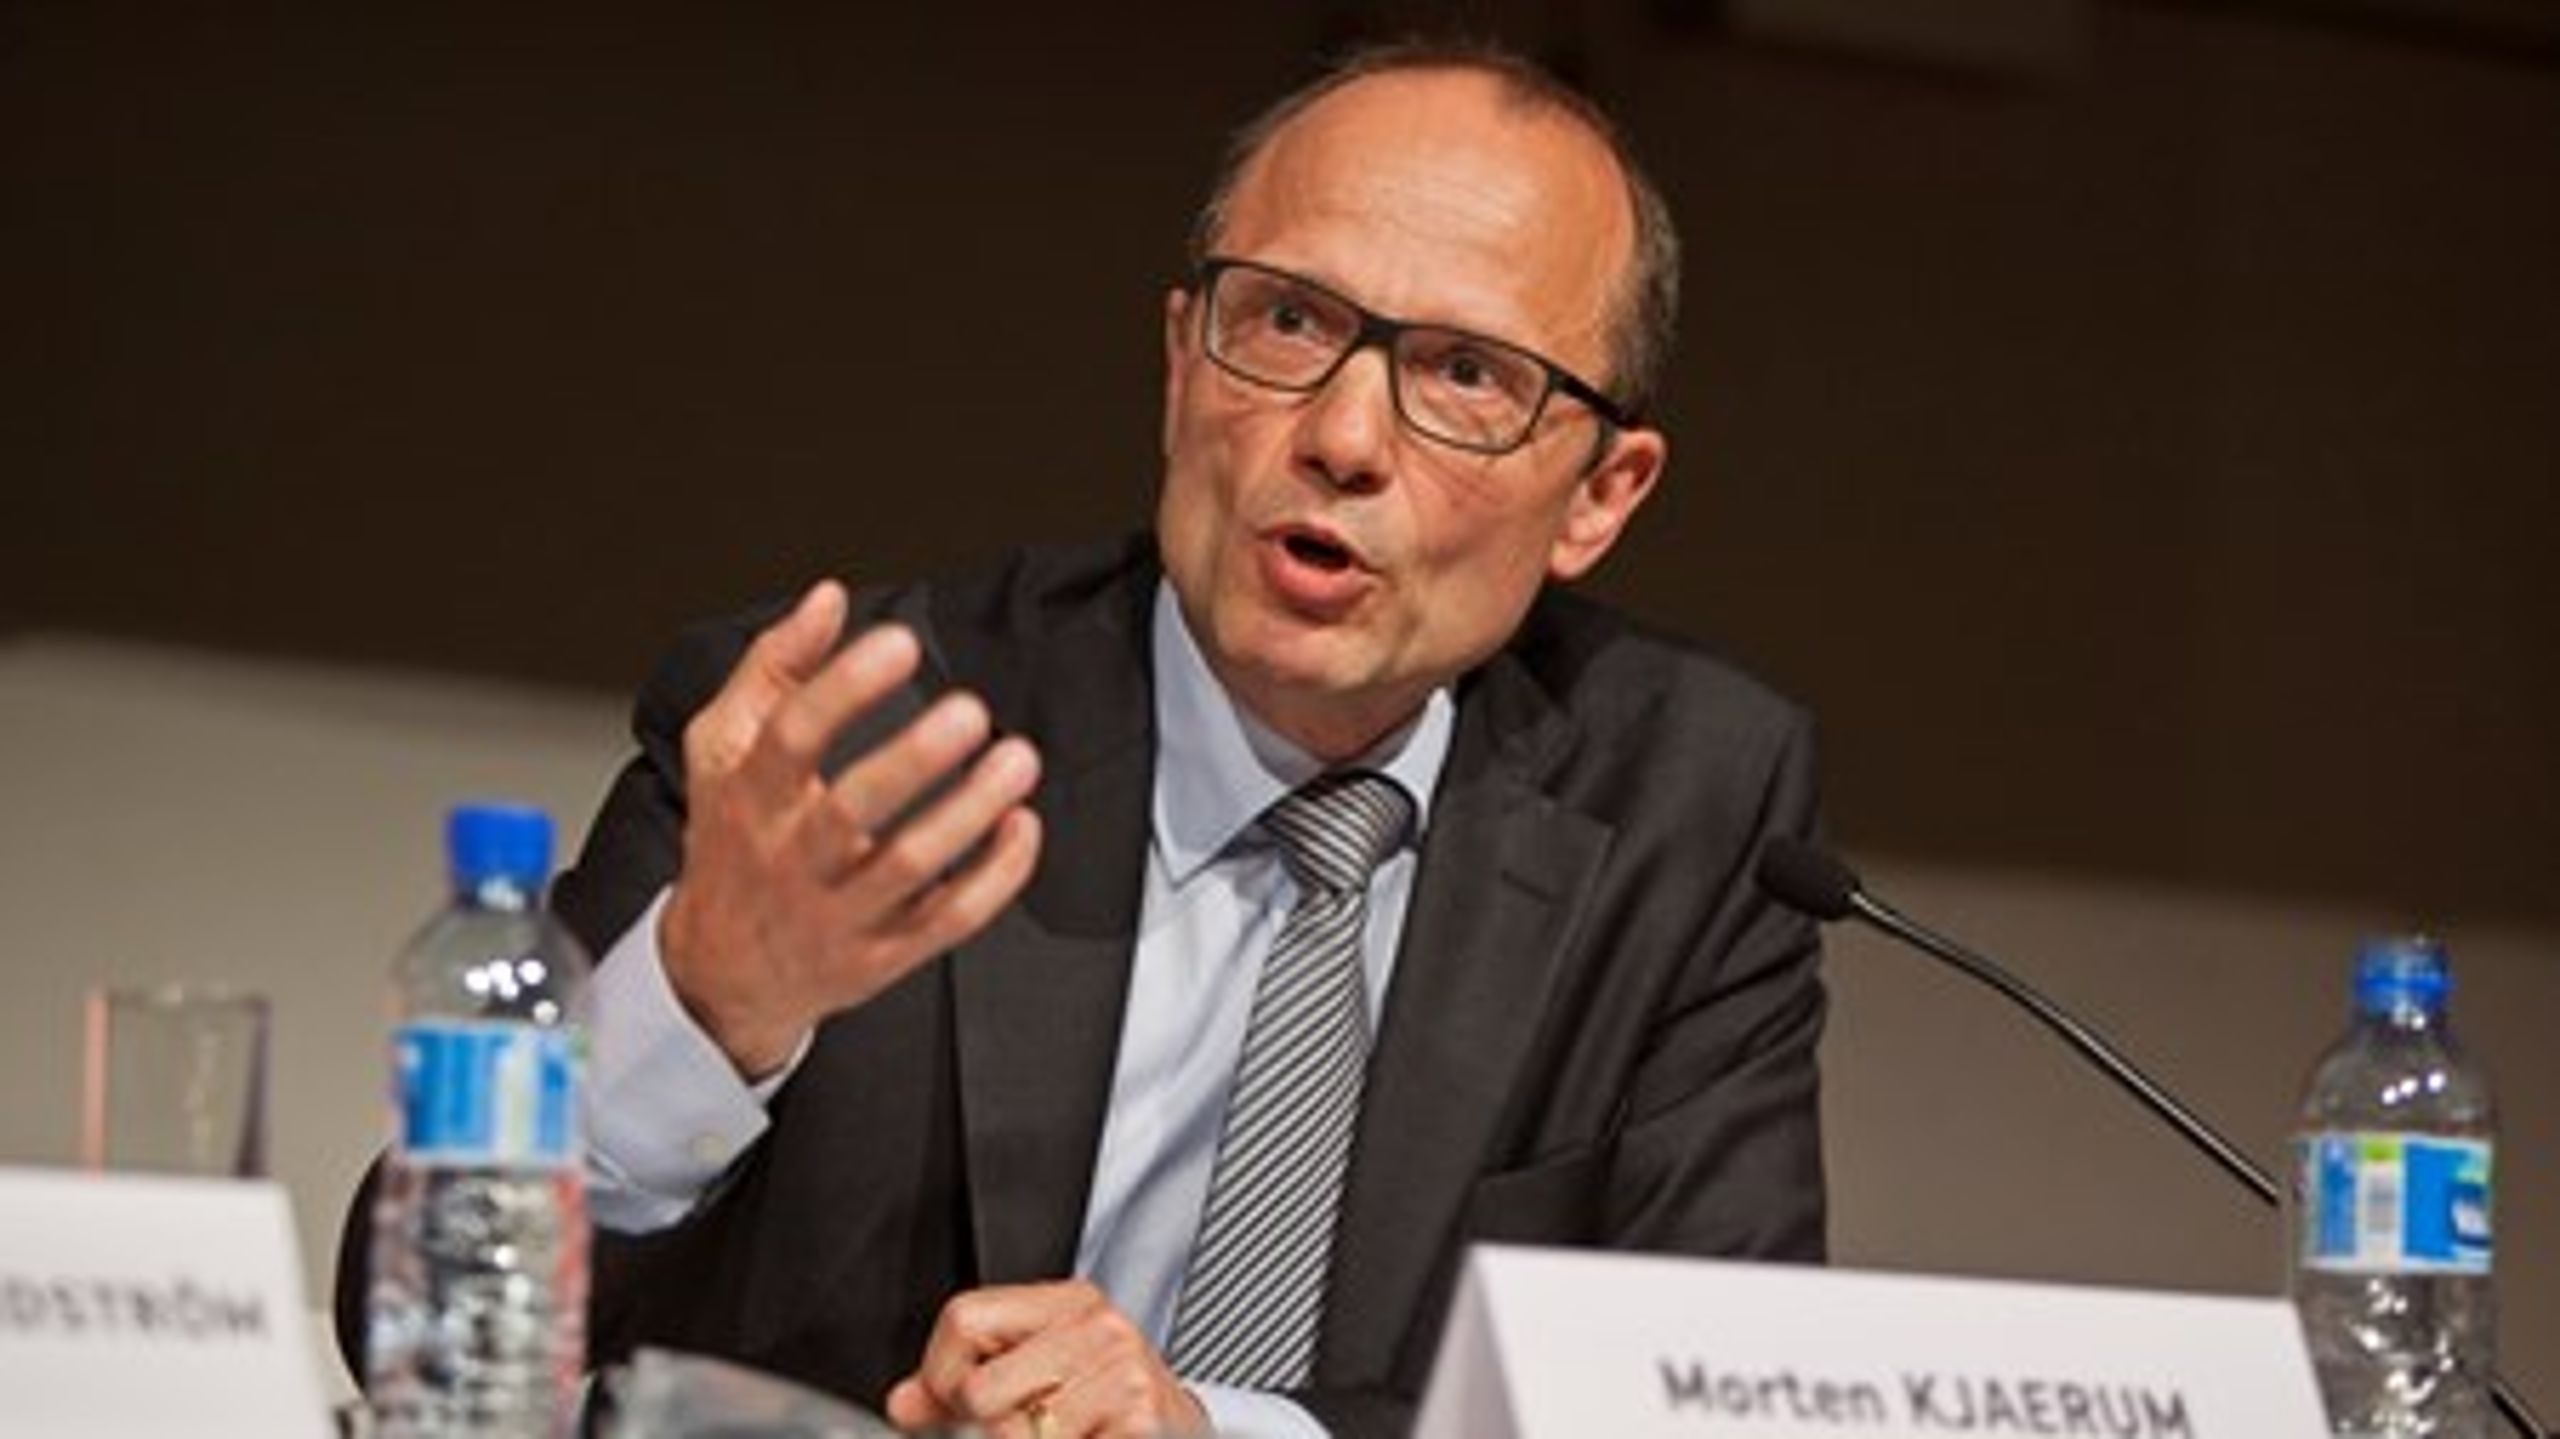 Morten Kjærum er direktør for EU's Agentur for Grundlæggende Rettigheder.